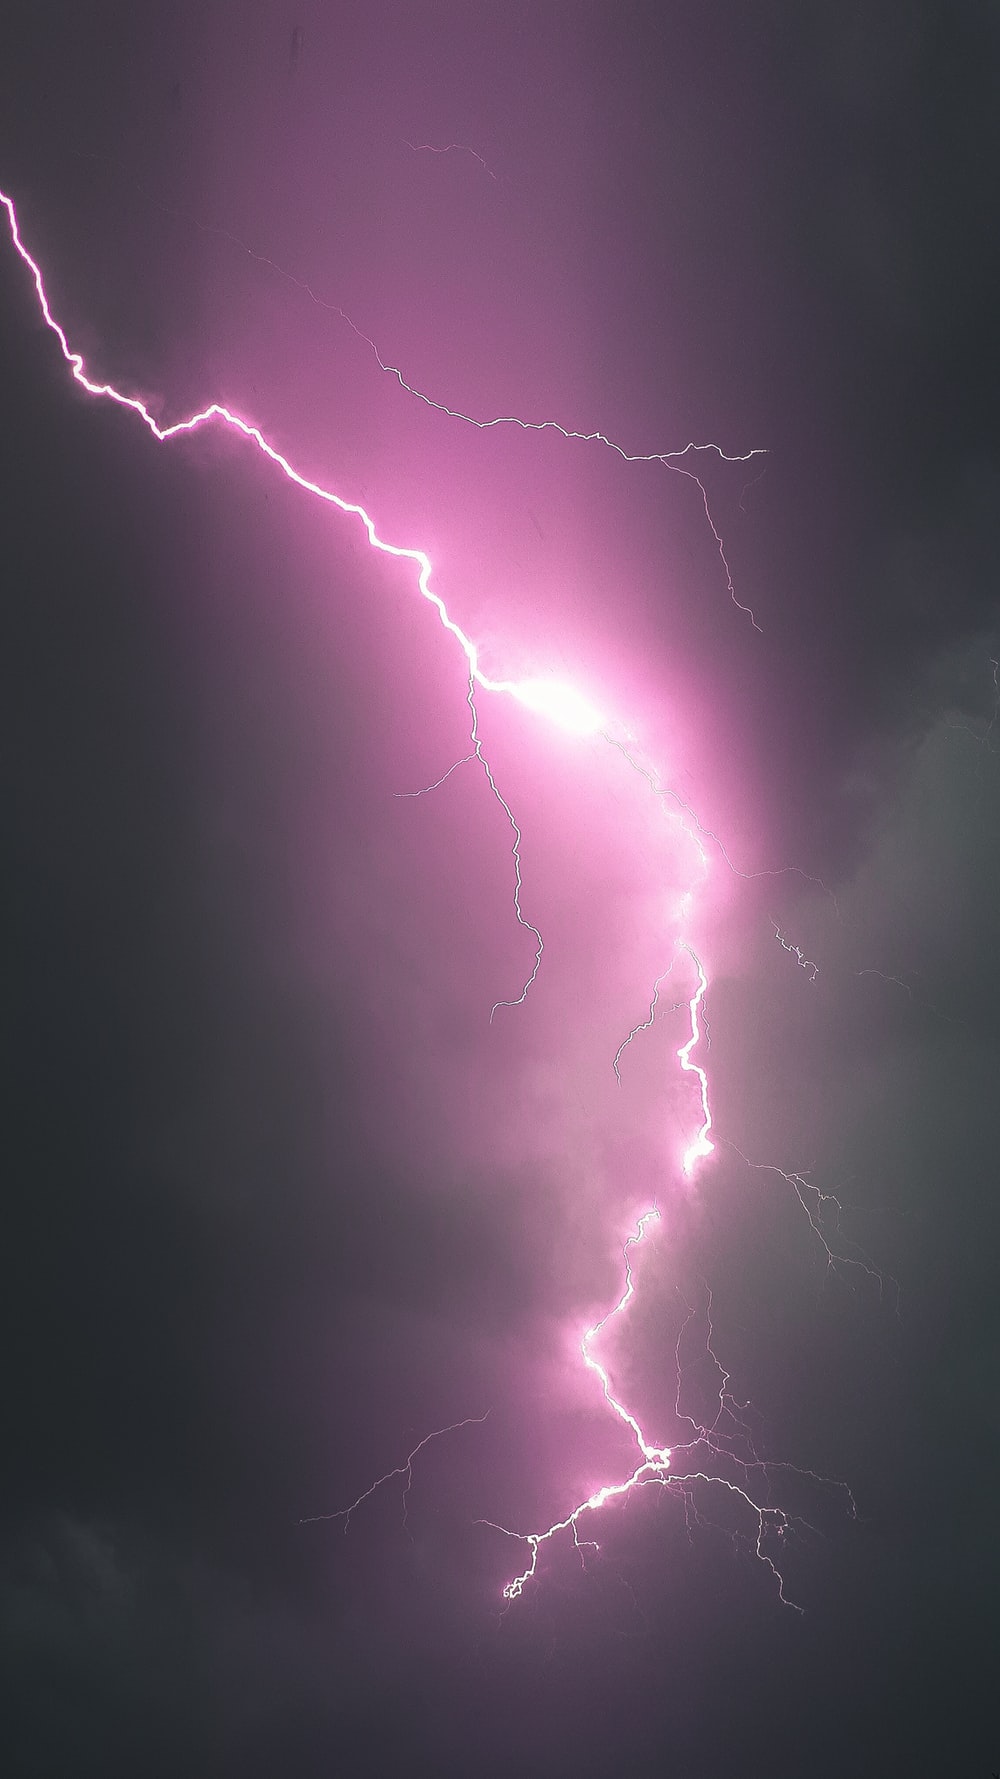 A purple lightning bolt in a dark purple sky. - Lightning